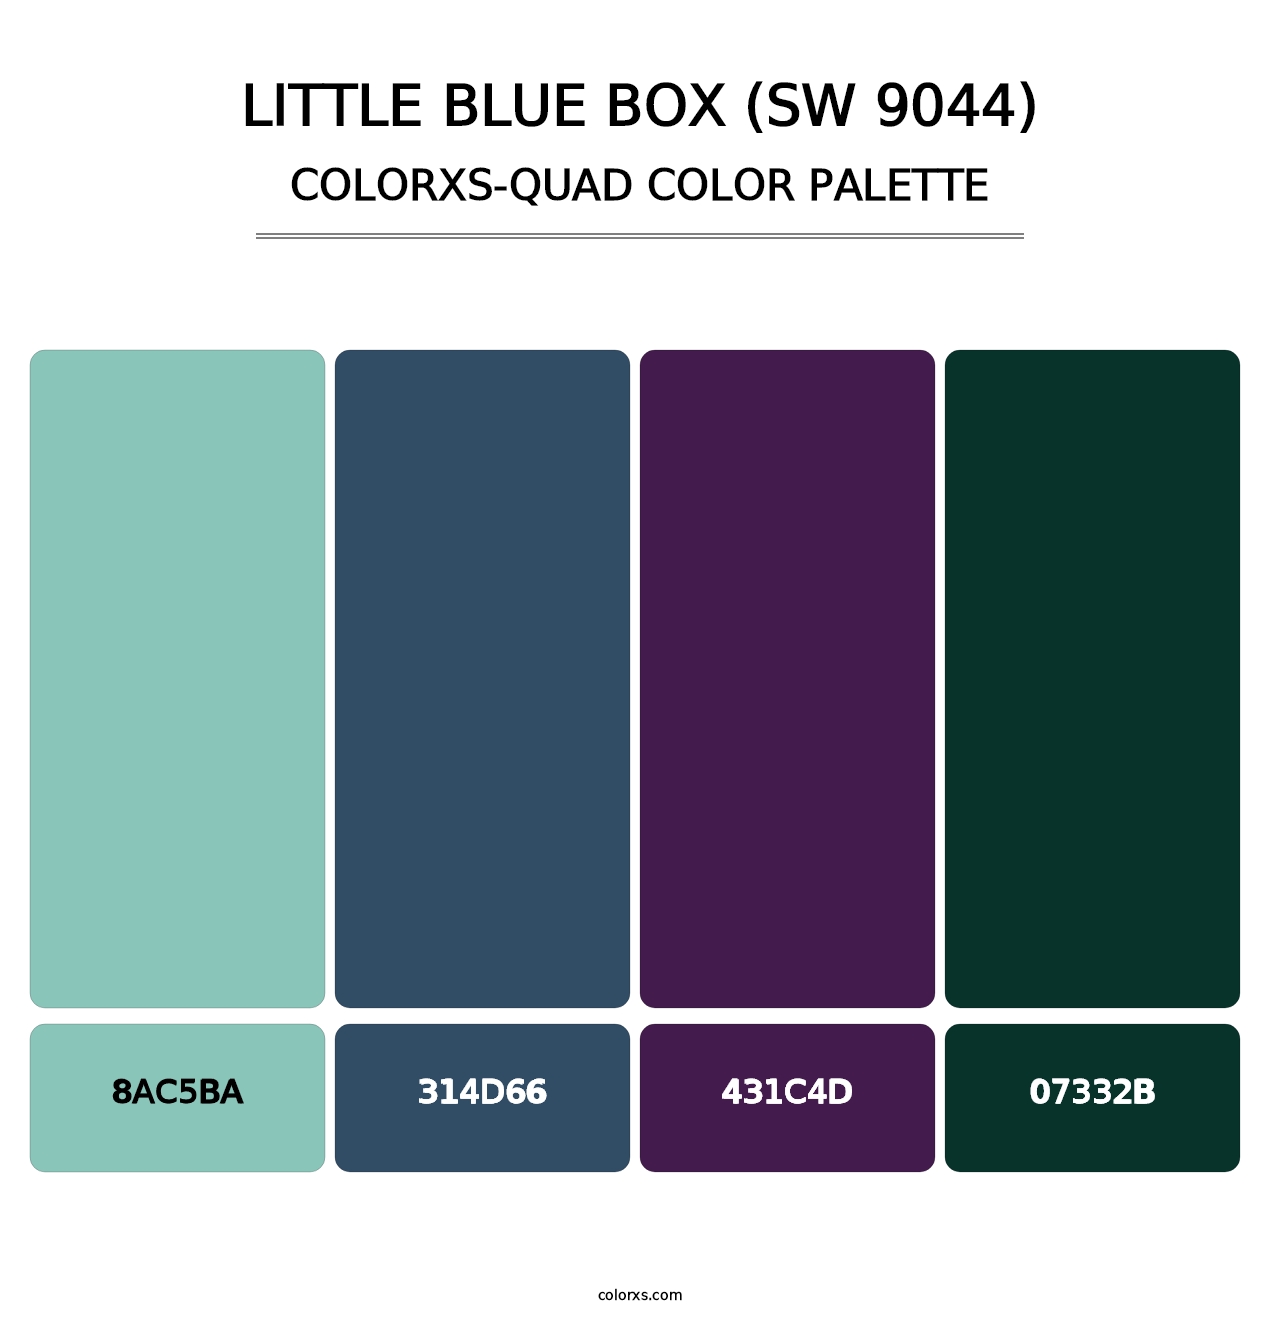 Little Blue Box (SW 9044) - Colorxs Quad Palette